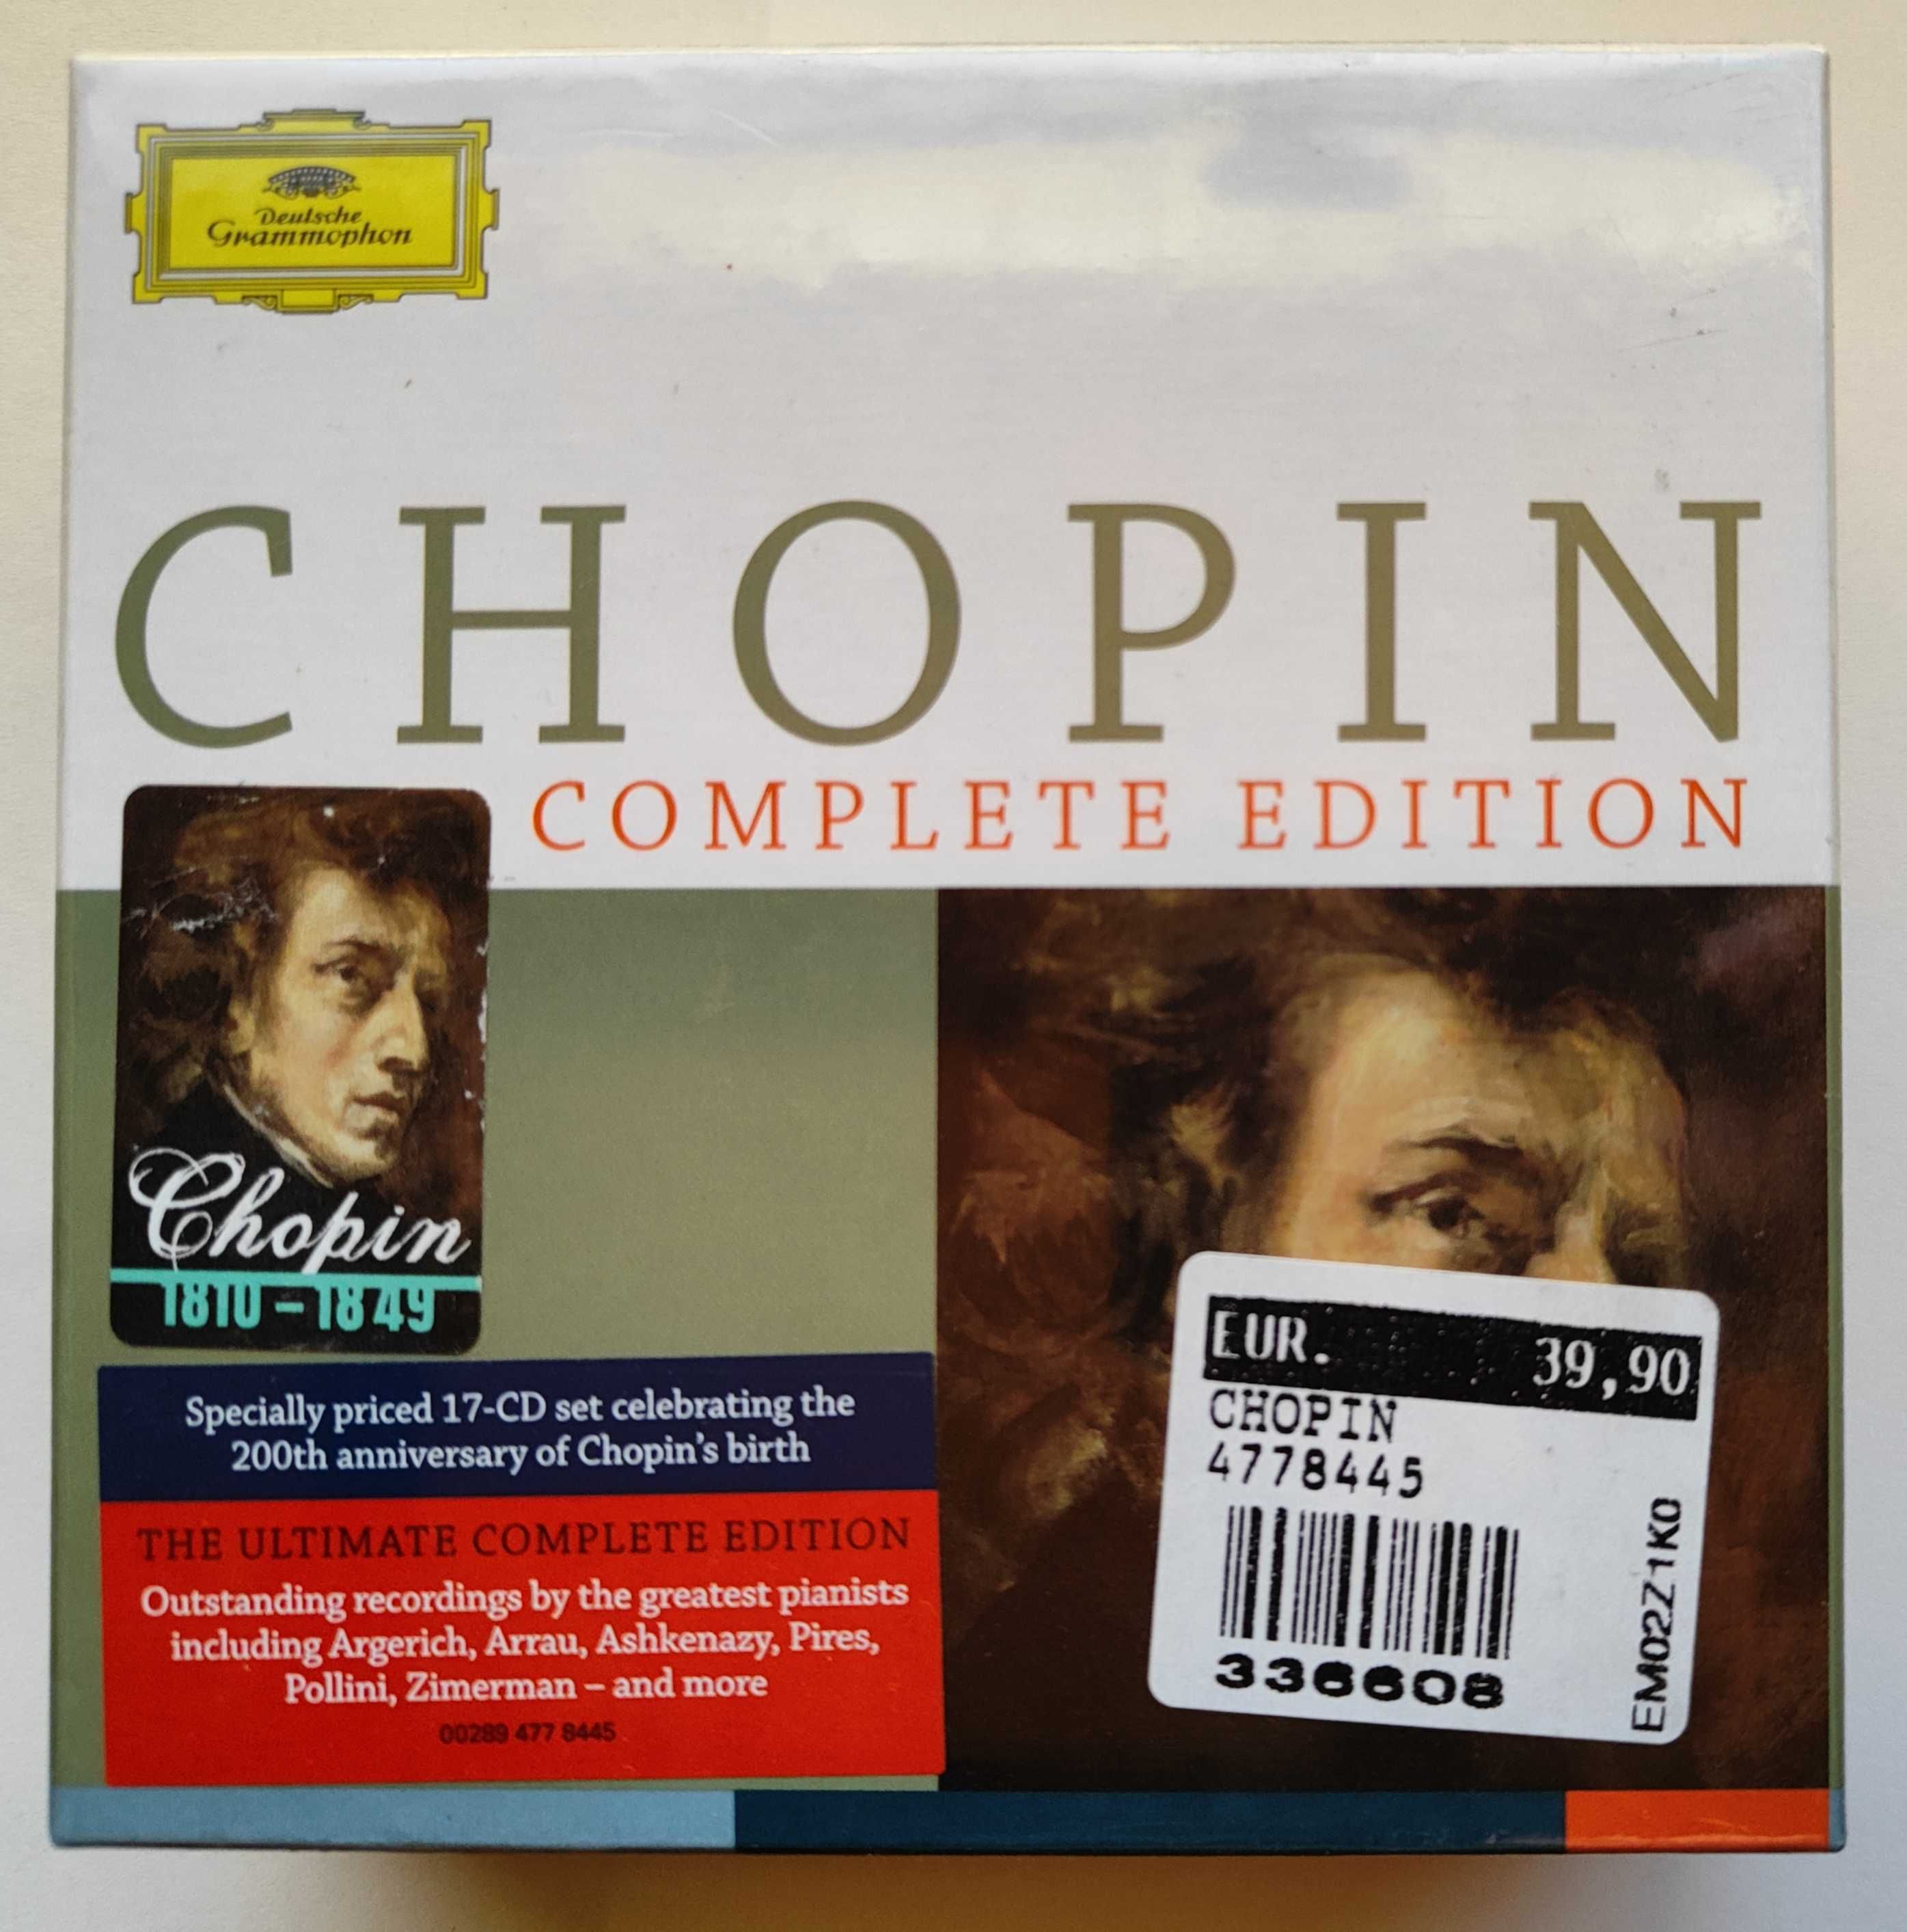 нар.　DVD　Edition　CD　до　на　900　CHOPIN　17　Шопена:　дня　Фр.　з　Коломыя　200-річчя　CD-box　Olx　пластинки　Complete　грн.　кассеты